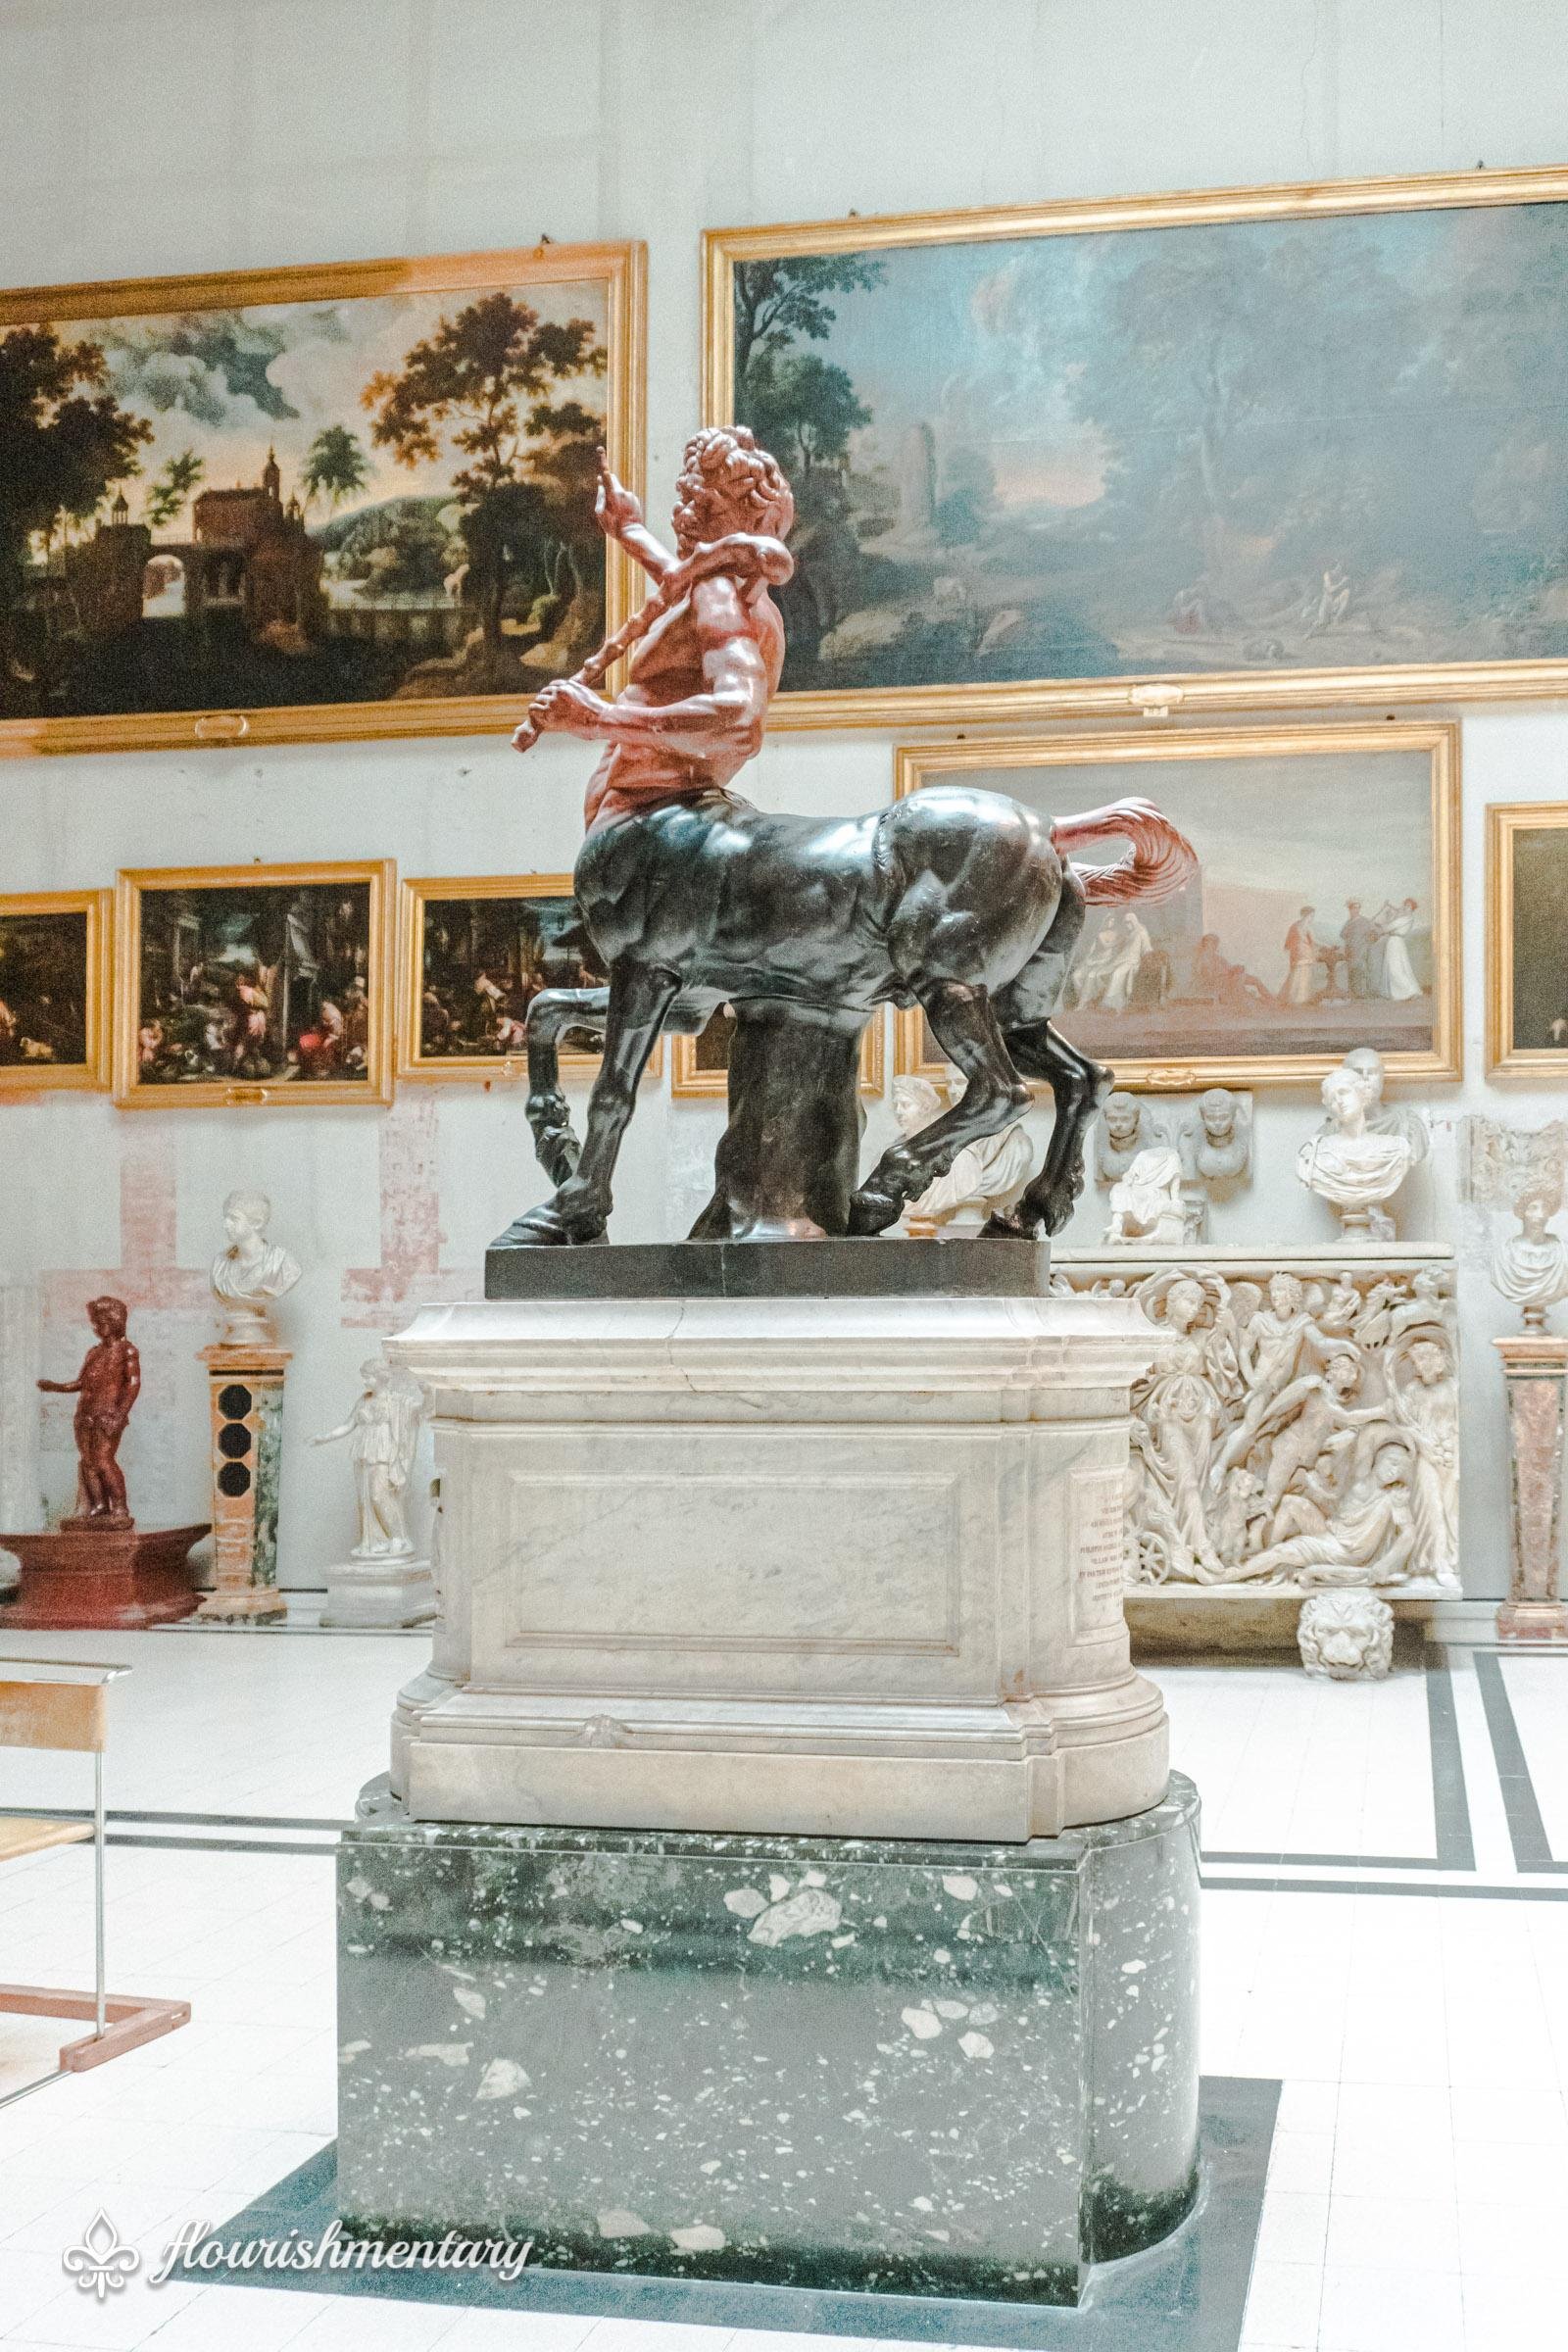 Galleria Doria Pamphilj centaur